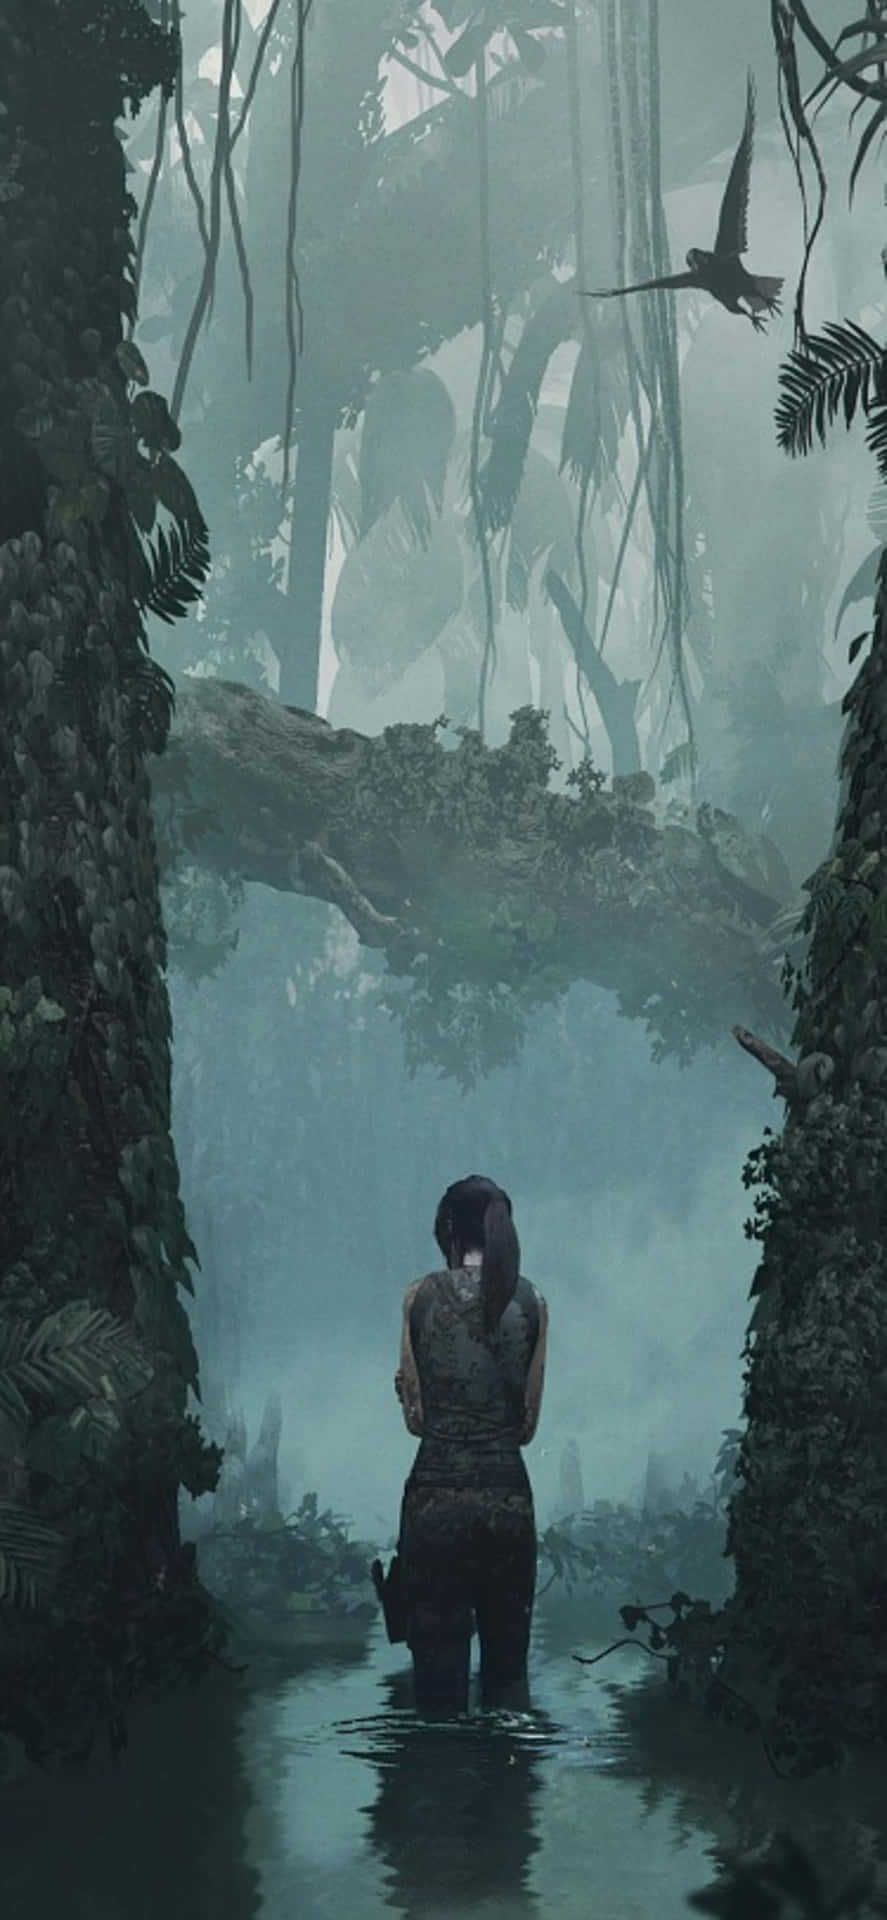 Increíblevista Del Viaje De Lara Croft En Shadow Of The Tomb Raider Para Iphone X.